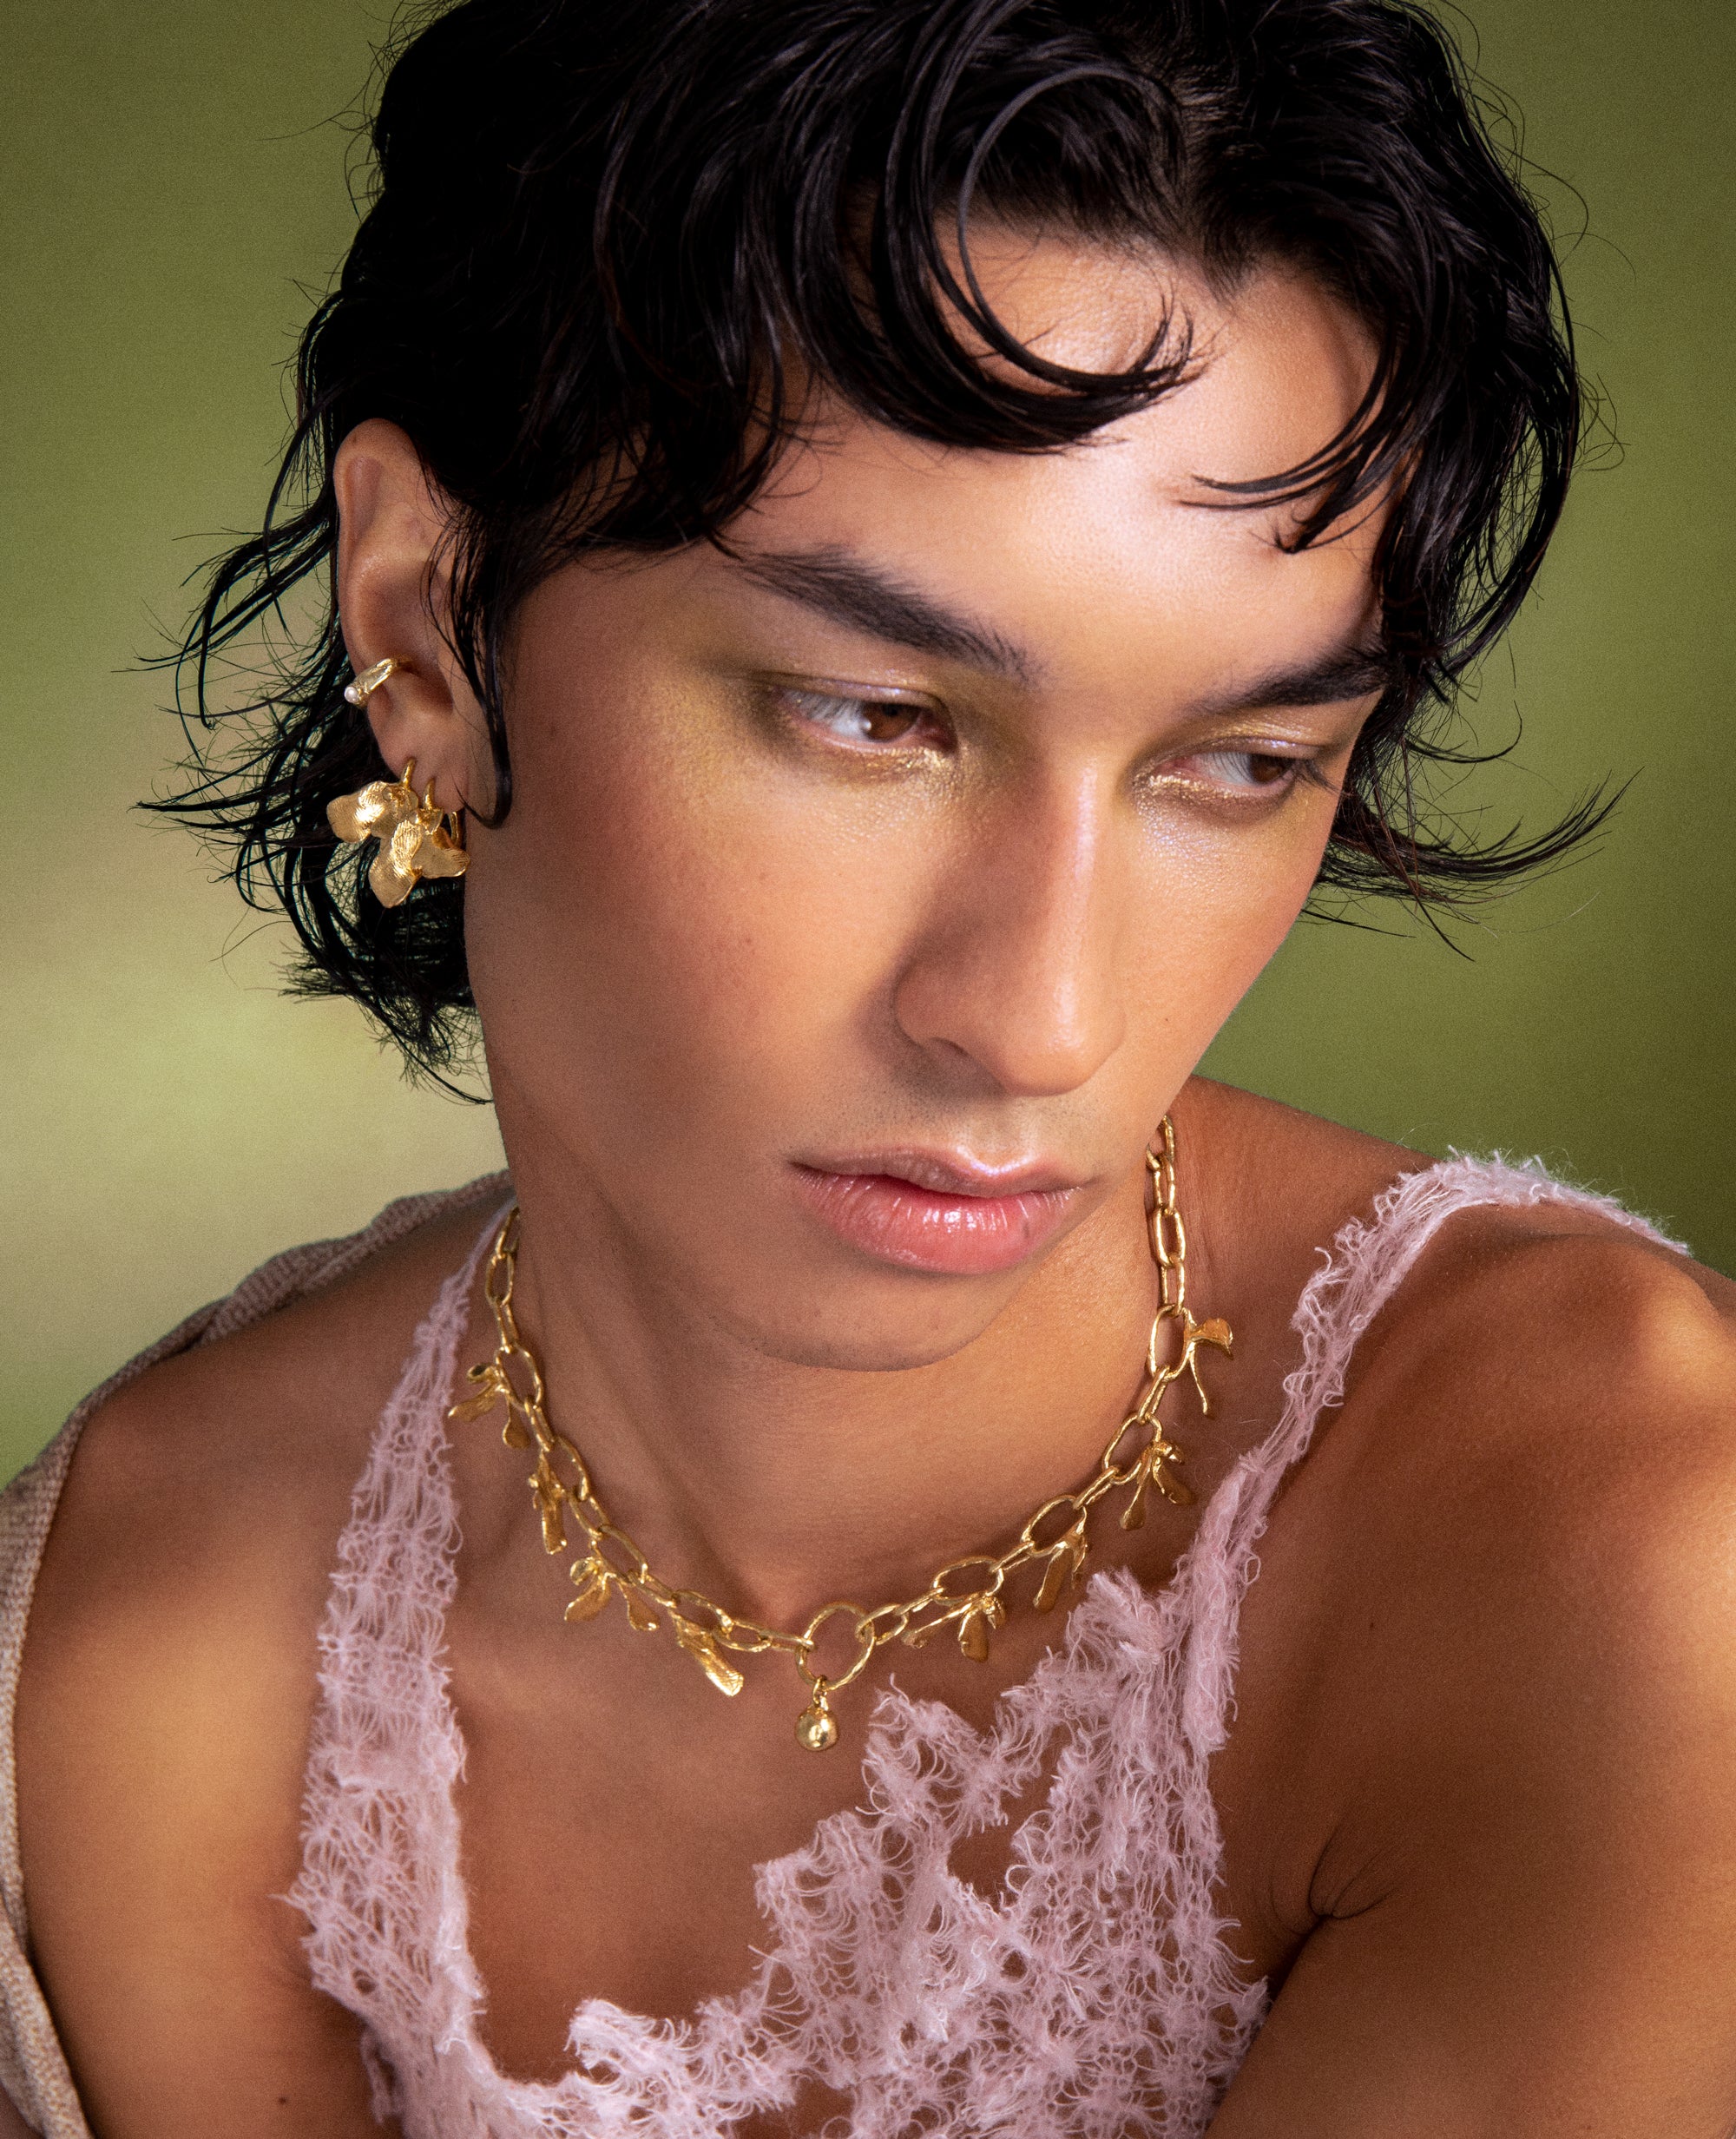 COLLIER FLORALIS // collier doré - ORA-C jewelry - bijoux faits à la main par Caroline Pham, designer indépendante basée à Montréal